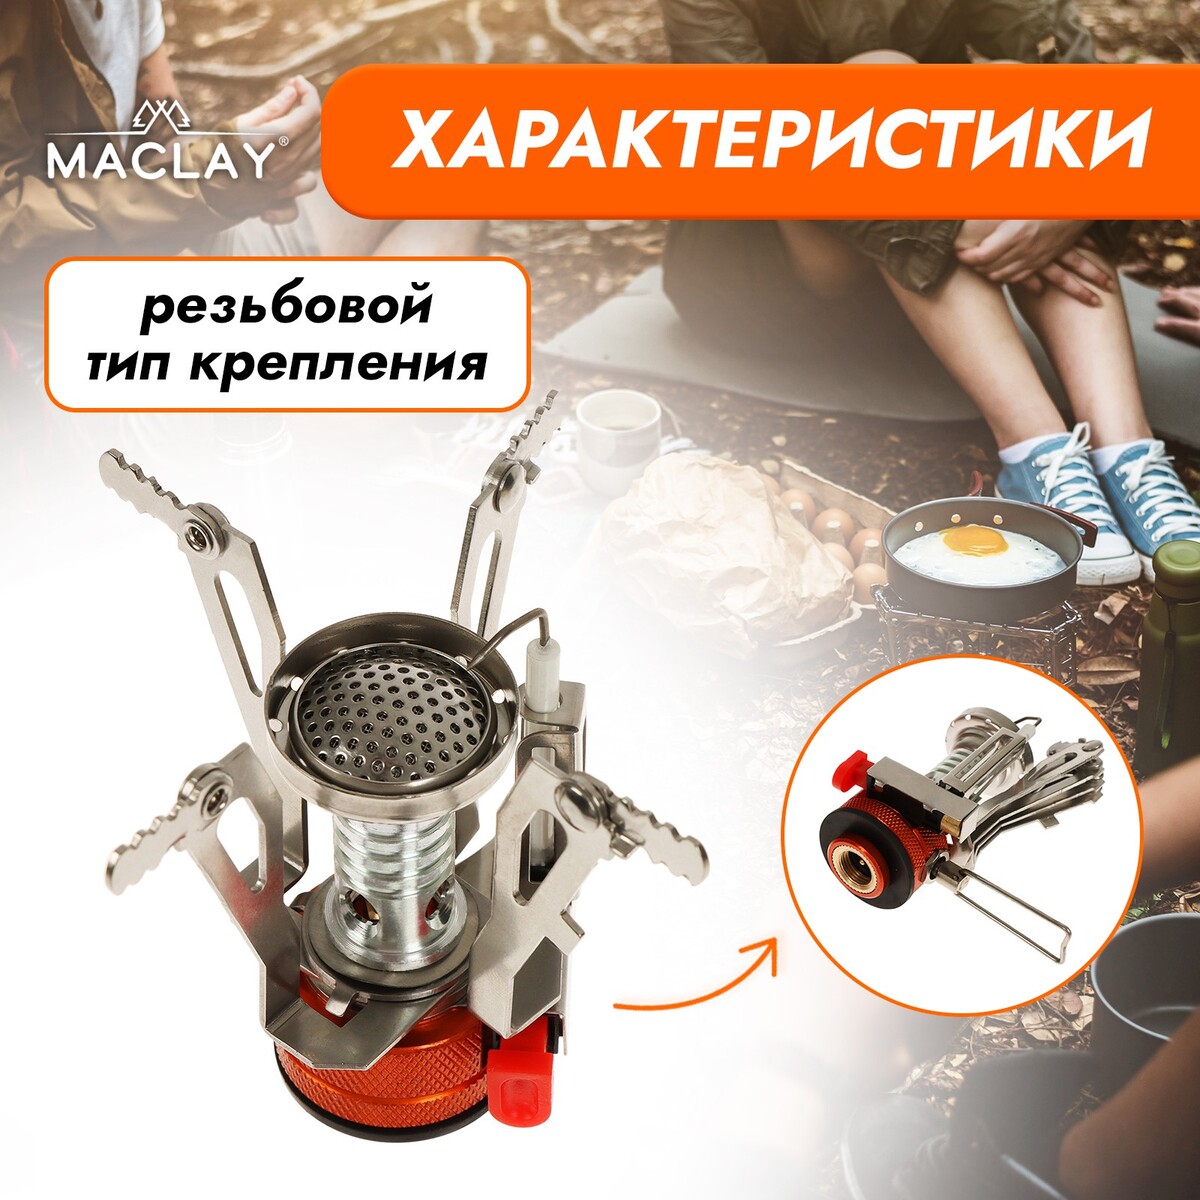 фото Набор туристической посуды maclay: 2 кастрюли, приборы, горелка, штопор, тряпка, карабин